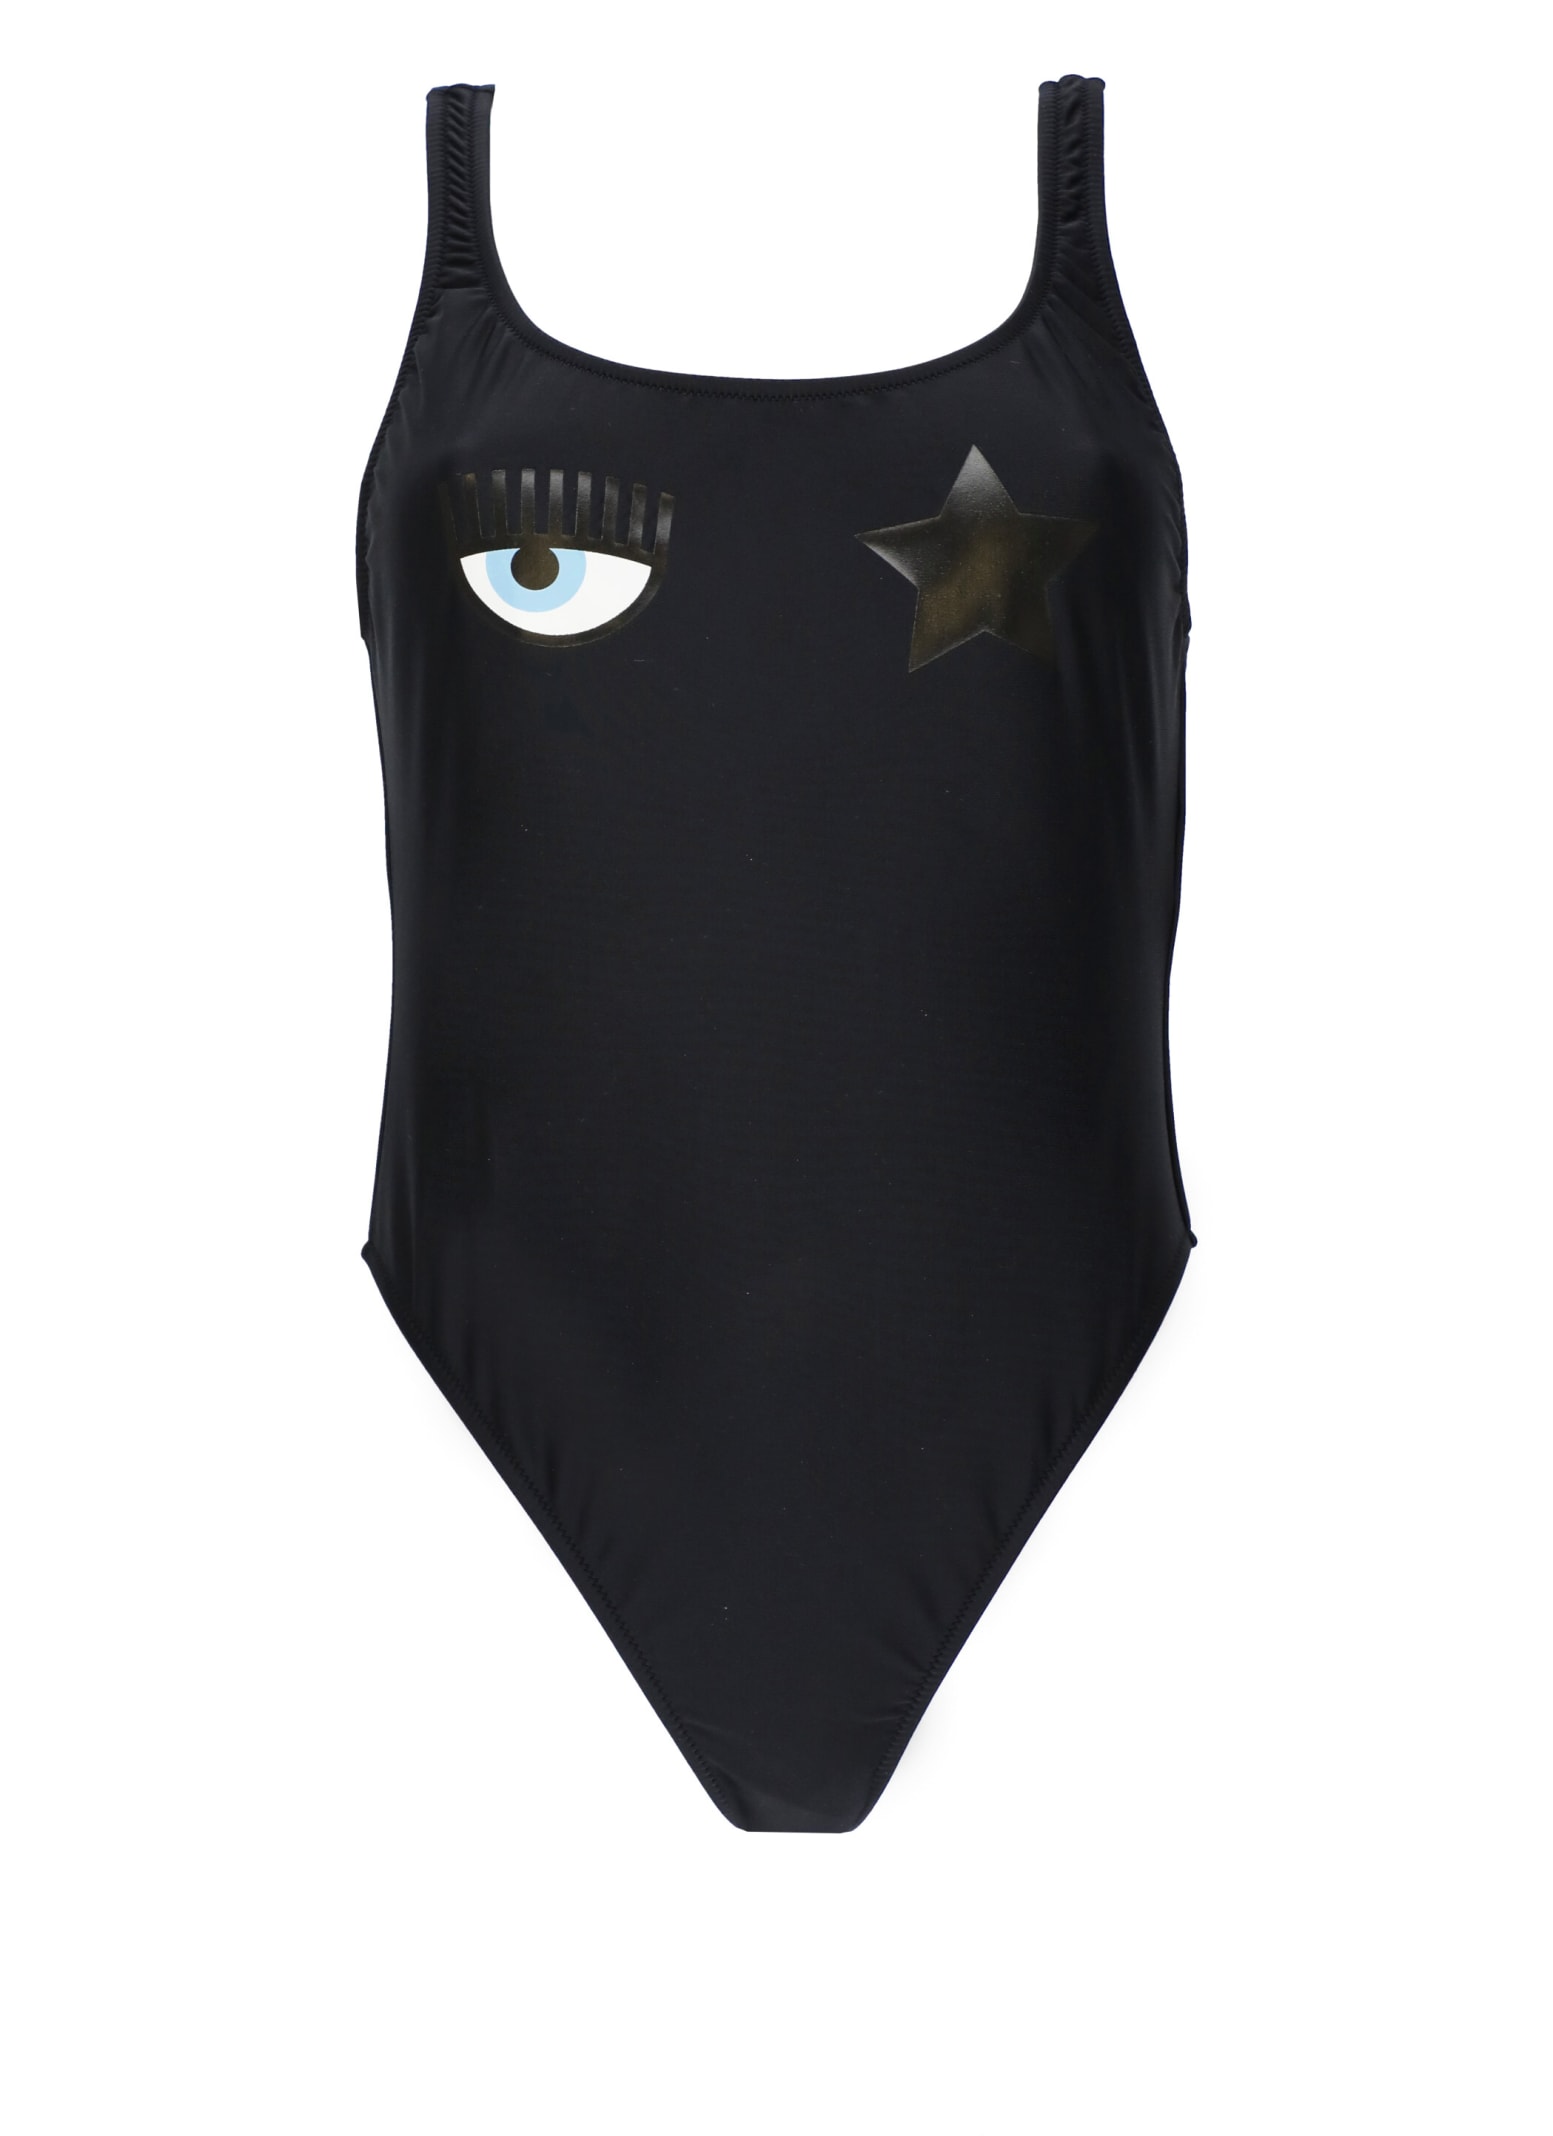 Chiara Ferragni Eyestar One-piece Swimsuit